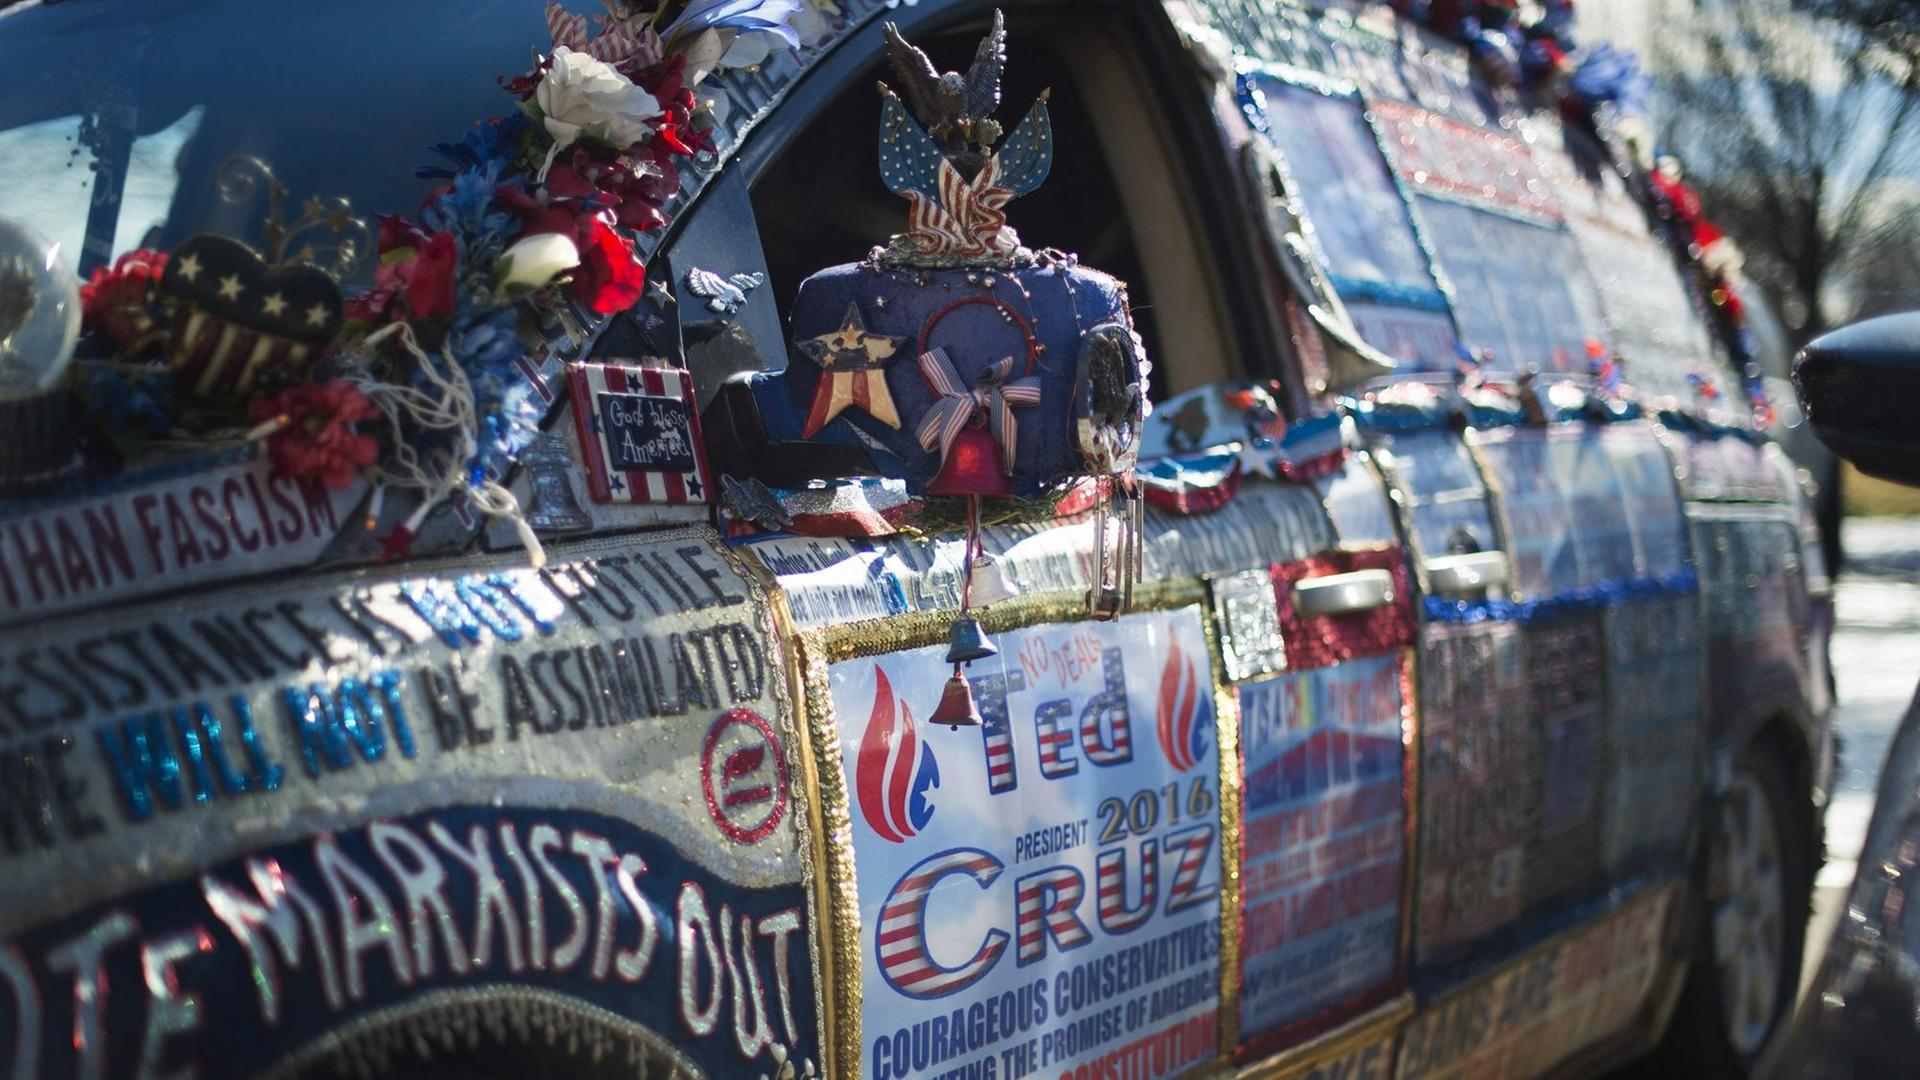 Ein Wagen mit Werbung für Ted Cruz vor dessen Wahlkampf-Hauptquartier in Iowa.